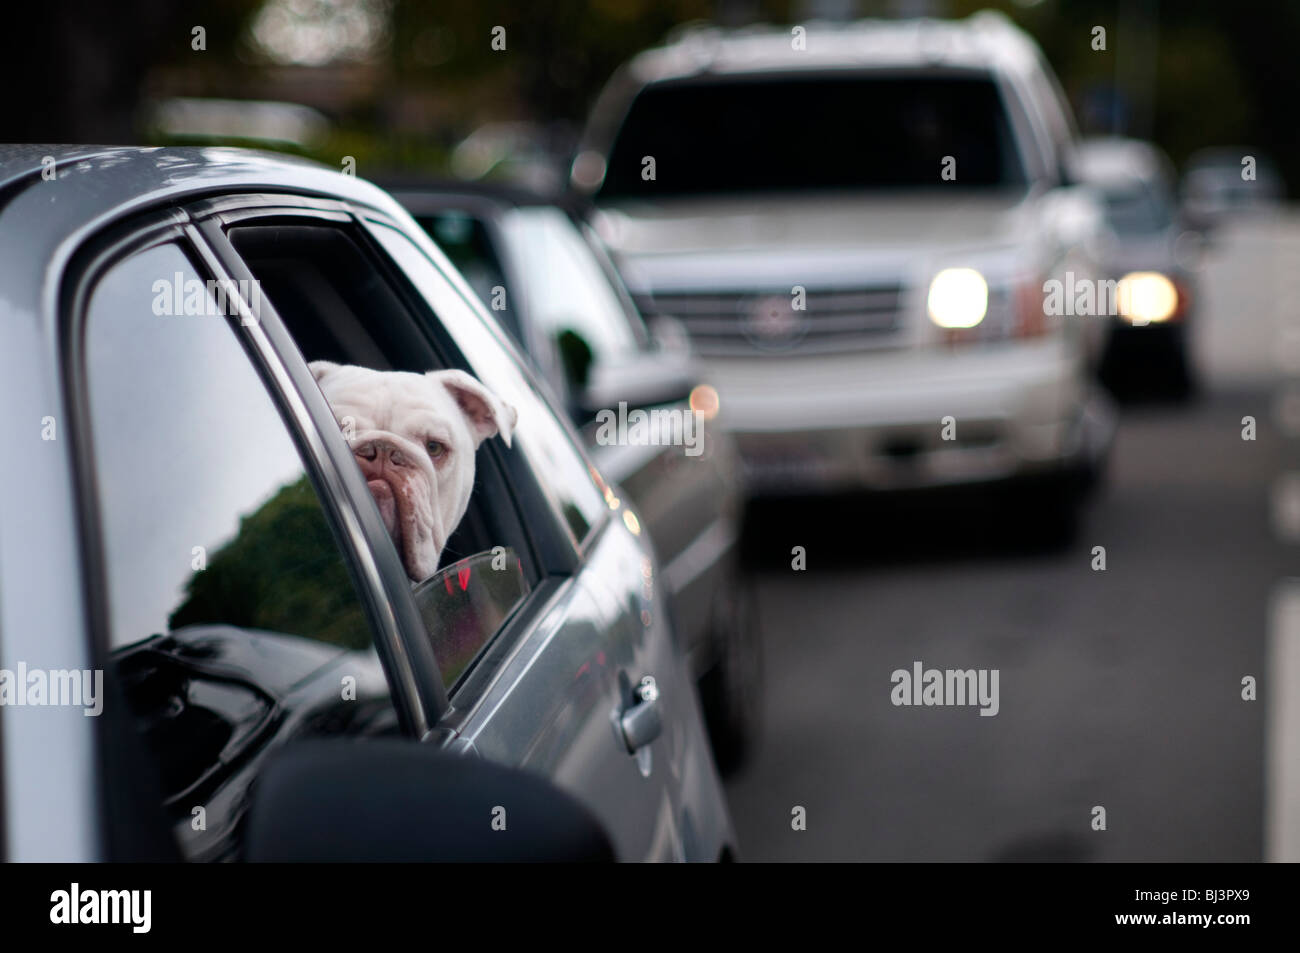 Un bouledogue ressemble et agit comme un chien de garde sur le site curieusement hors de la fenêtre d'une voiture dans la circulation sur une autoroute. Banque D'Images